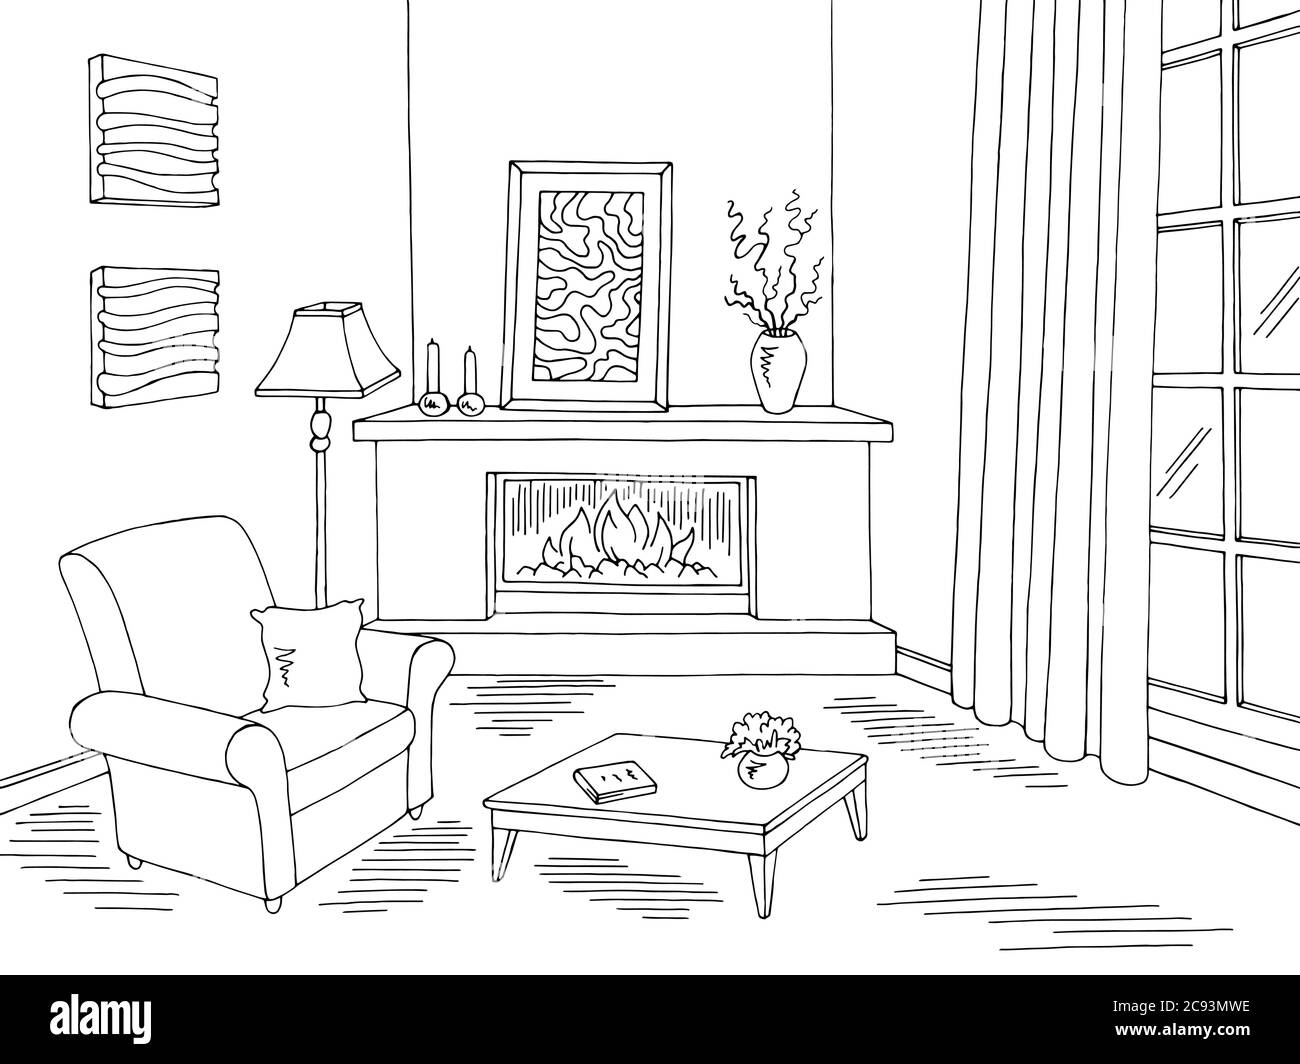 Wohnzimmer Grafik schwarz weiß Haus Interieur Skizze Illustration Vektor  Stock-Vektorgrafik - Alamy